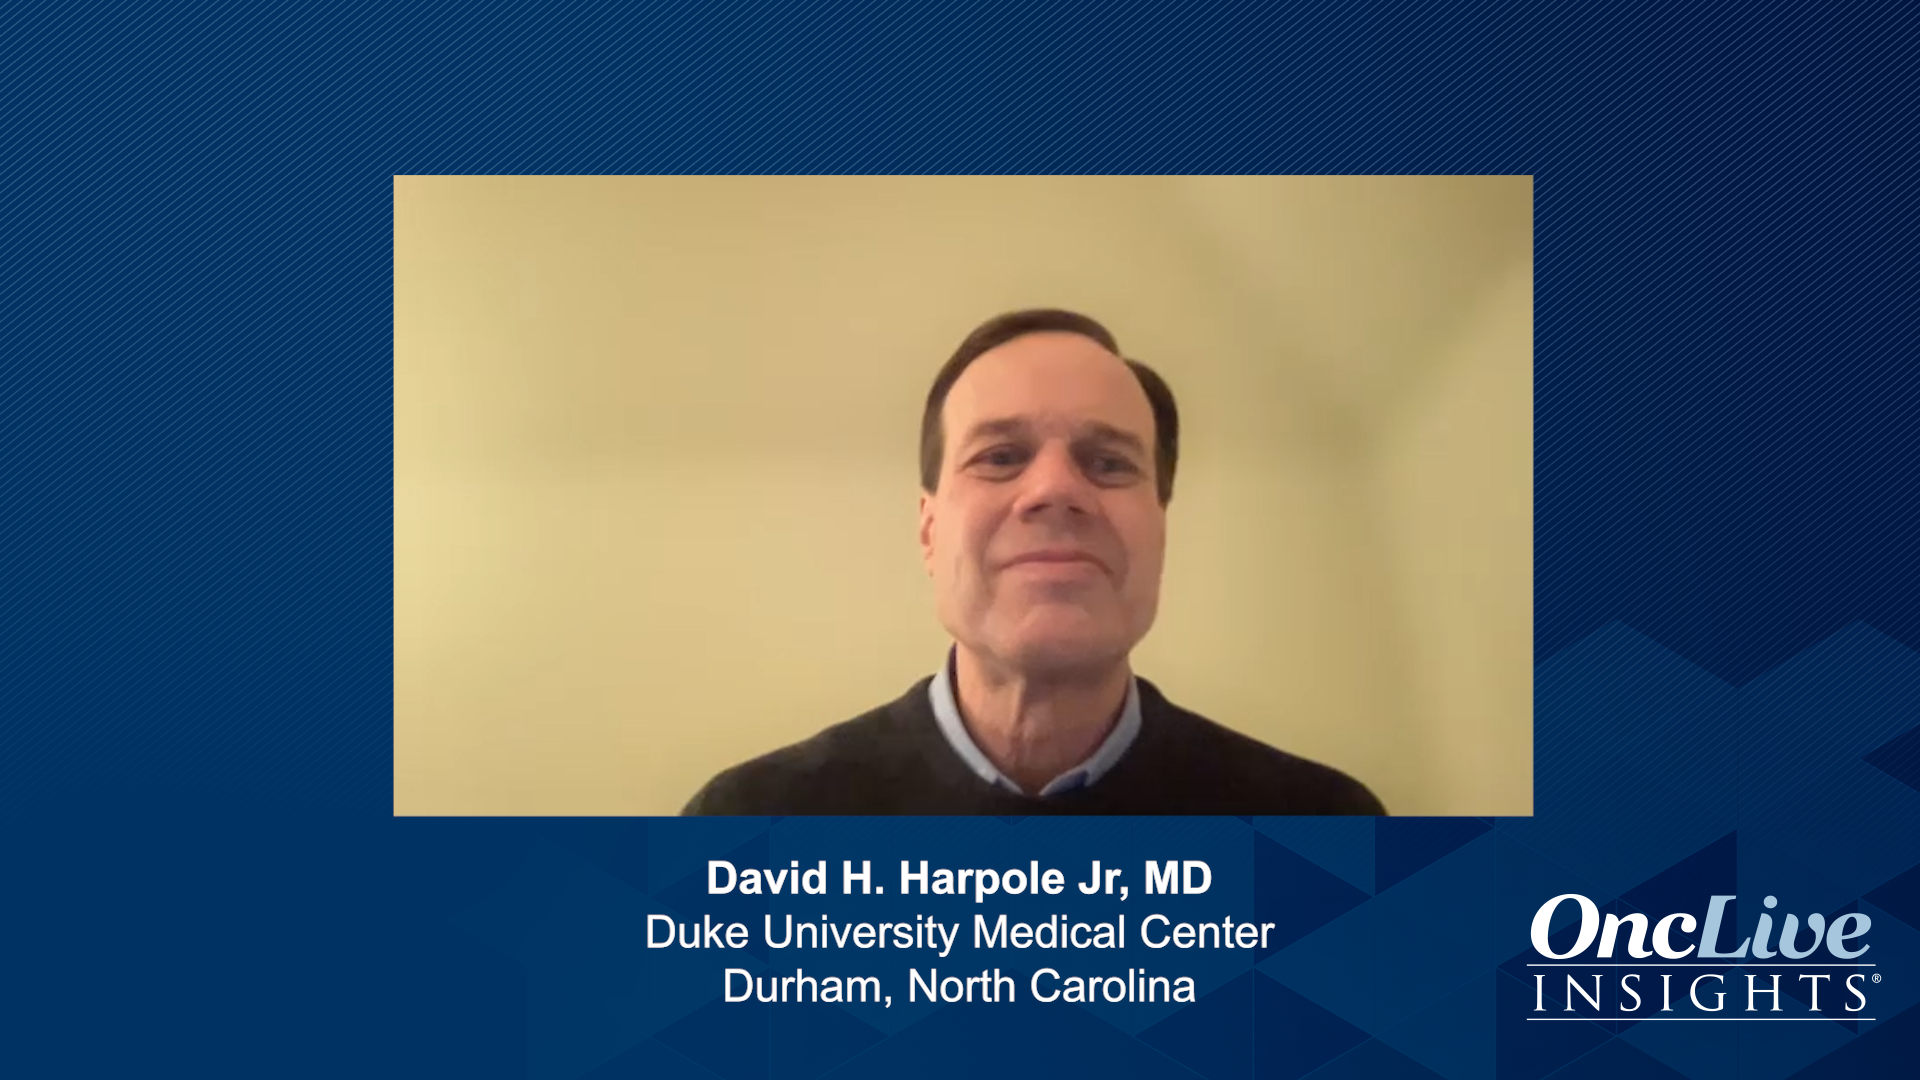 David H. Harpole Jr, MD, a lung cancer expert